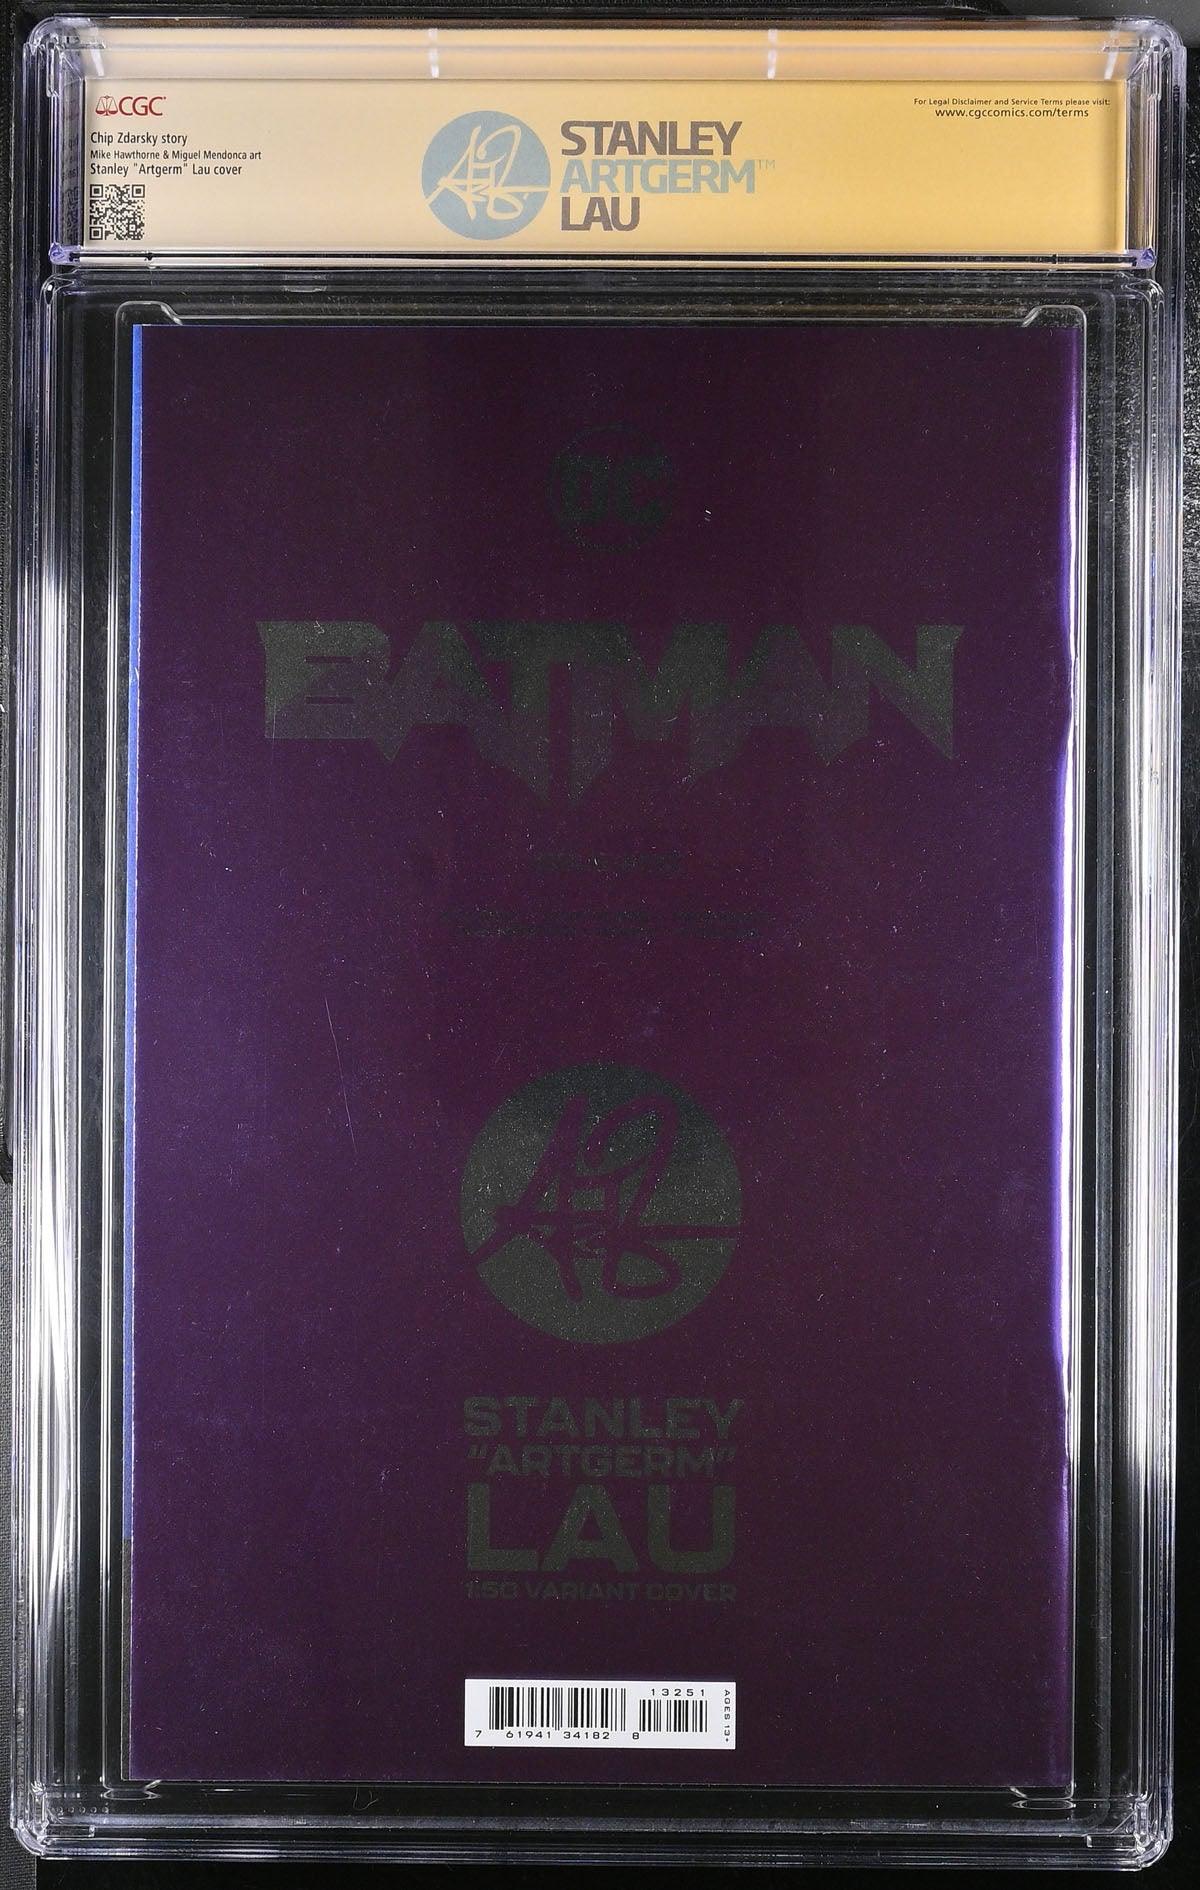 CGC BATMAN VOL 3 #132 LAU FOIL EDITION (9.8) SIGNATURE SERIES - SIGNED BY STANLEY "ARTGERM" - Kings Comics